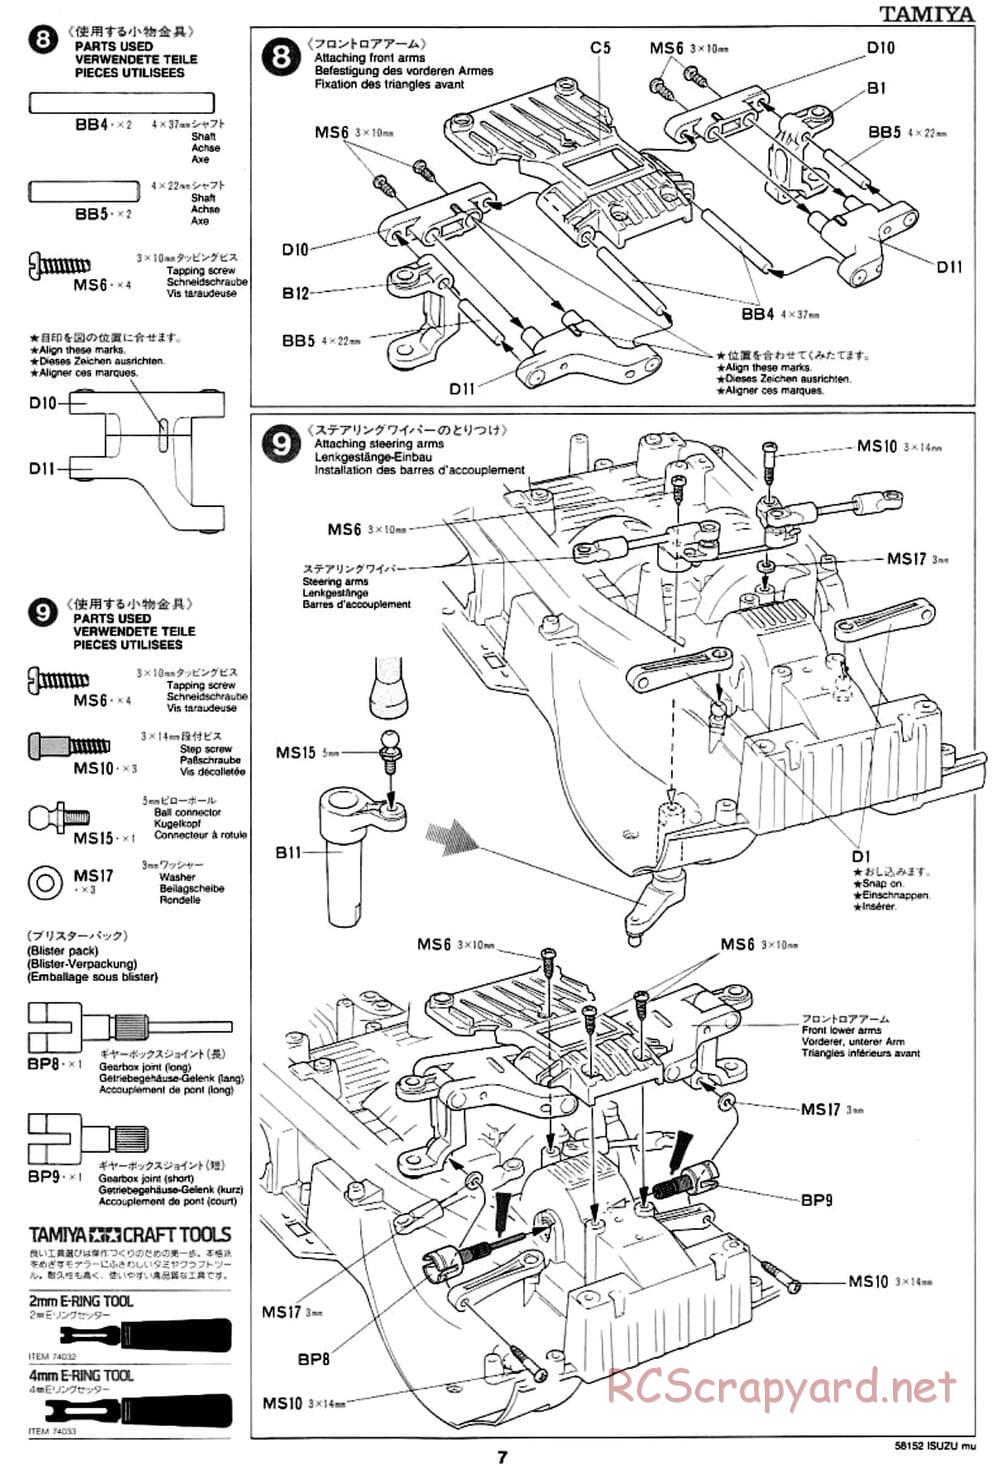 Tamiya - Isuzu Mu - CC-01 Chassis - Manual - Page 7